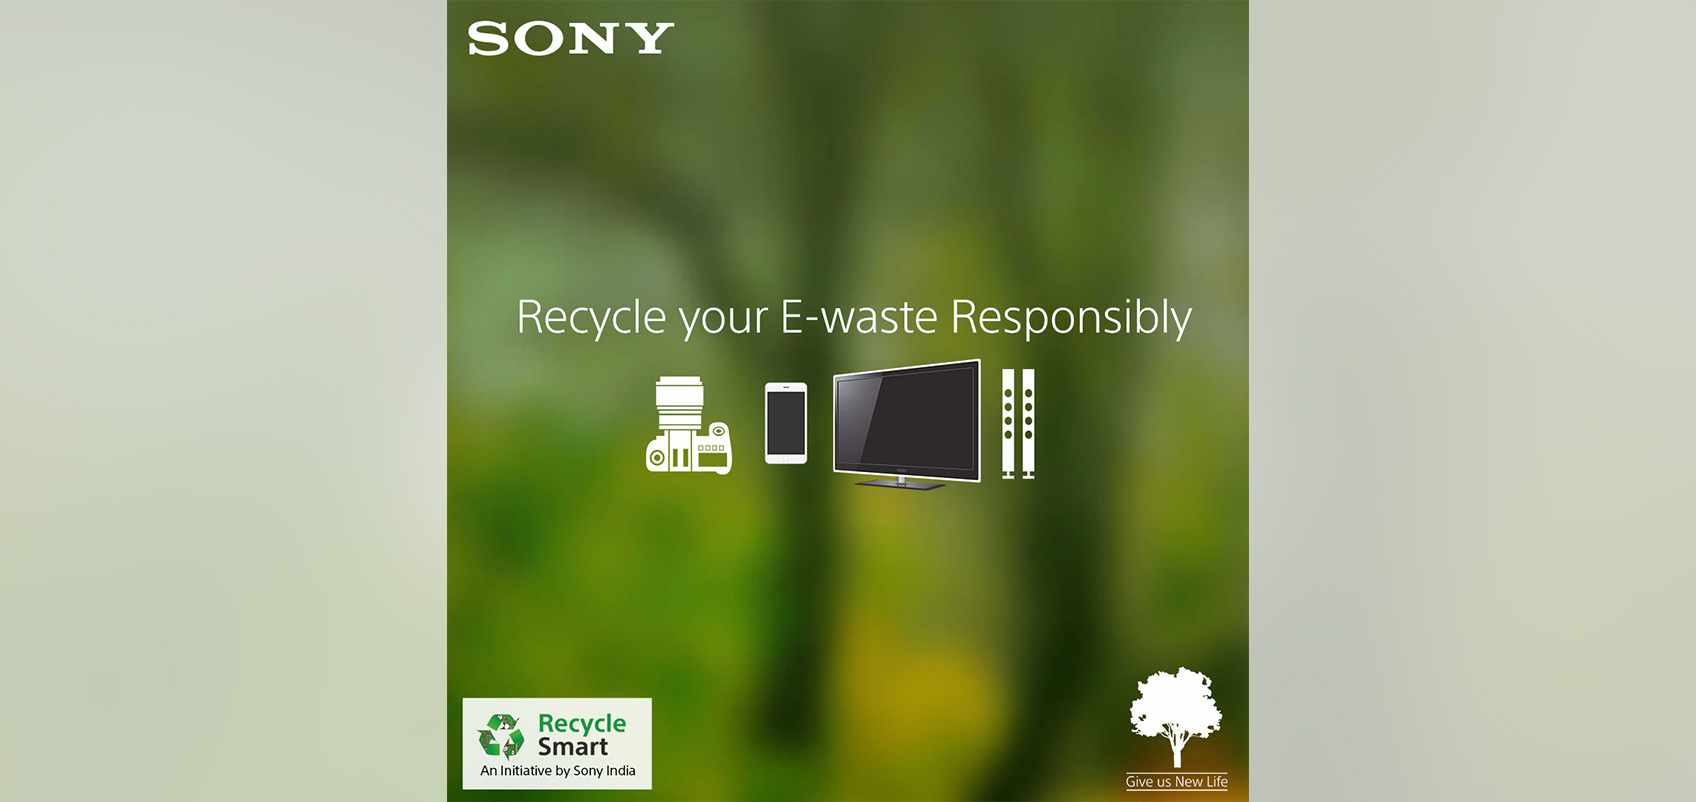 "Recycle your E-waste Responsibly（責任をもって電子機器をリサイクルしましょう）"の文字の下に電子機器のイラストが描かれている